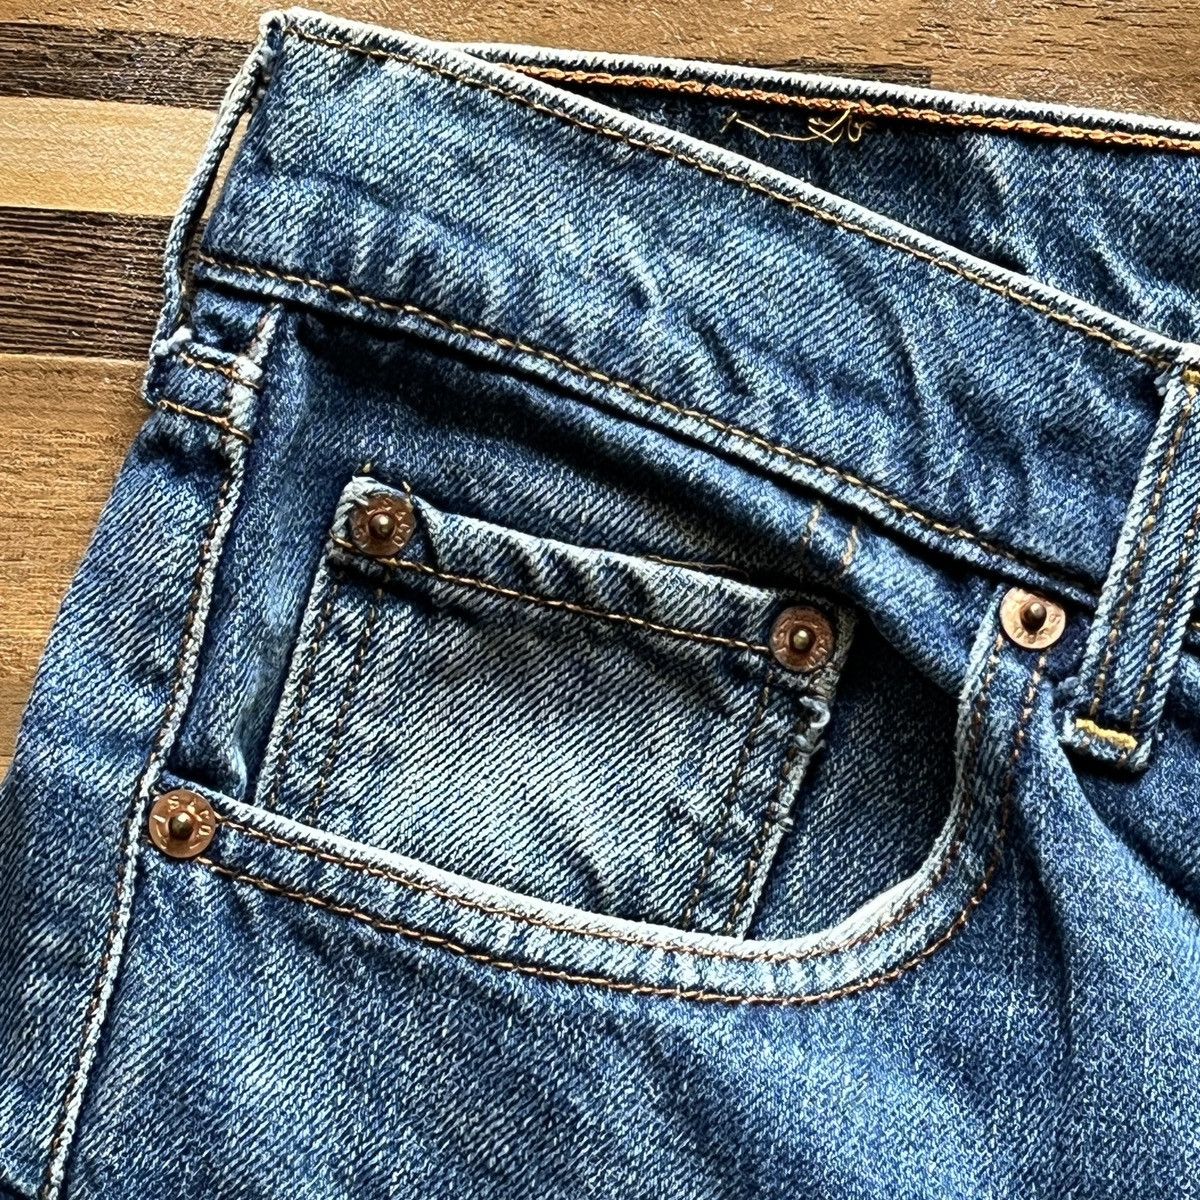 Vintage 1980s Levi's 603 Denim Jeans Straight Cut - 7